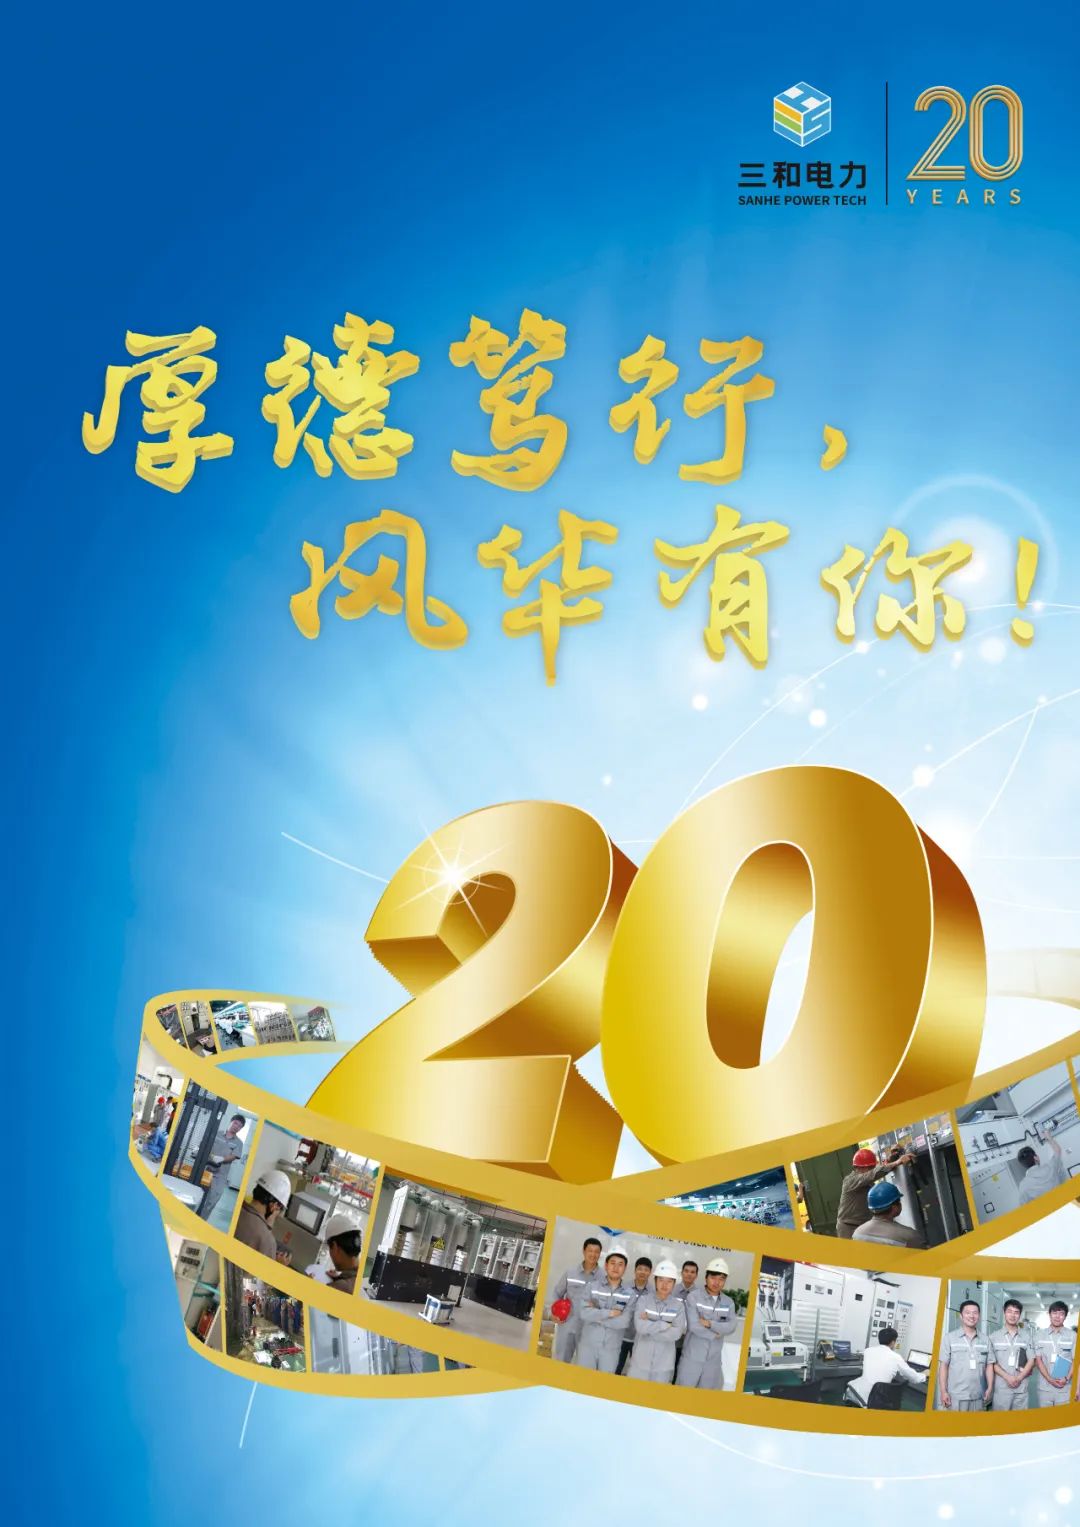 厚德笃行，风华有你！祝深圳市三和电力20周年生日快乐！